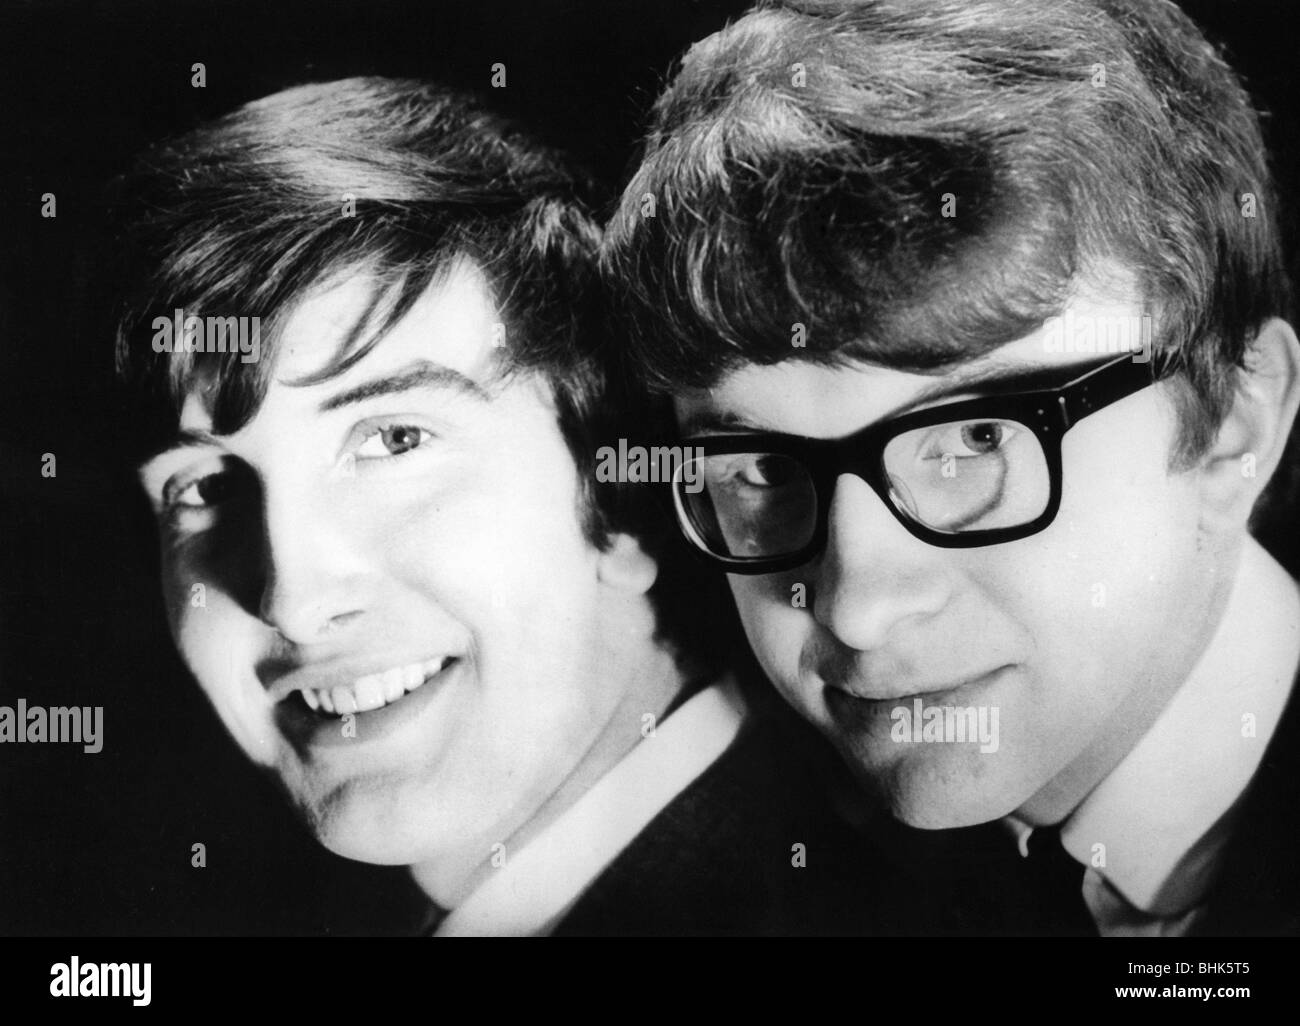 Peter et Gordon, groupe musical britannique (pop), 1964 - 1968, Gordon Waller (4.6.1945 - 17.6.2009), Peter Asher (* 22.6.1944), double portrait, milieu des années 1960, Banque D'Images